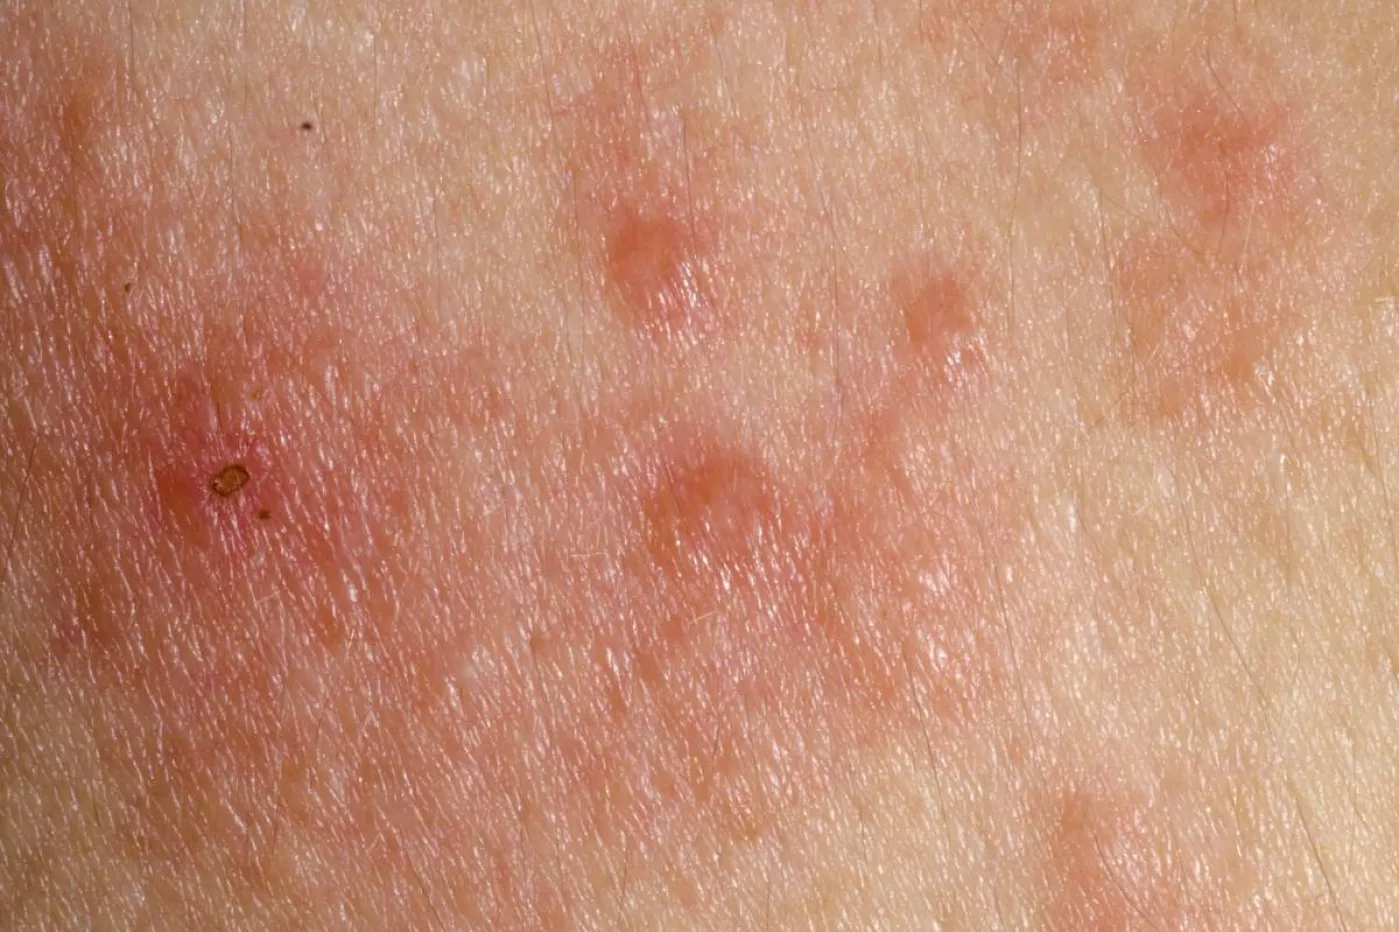 Piel afectada por dermatitis atópica.